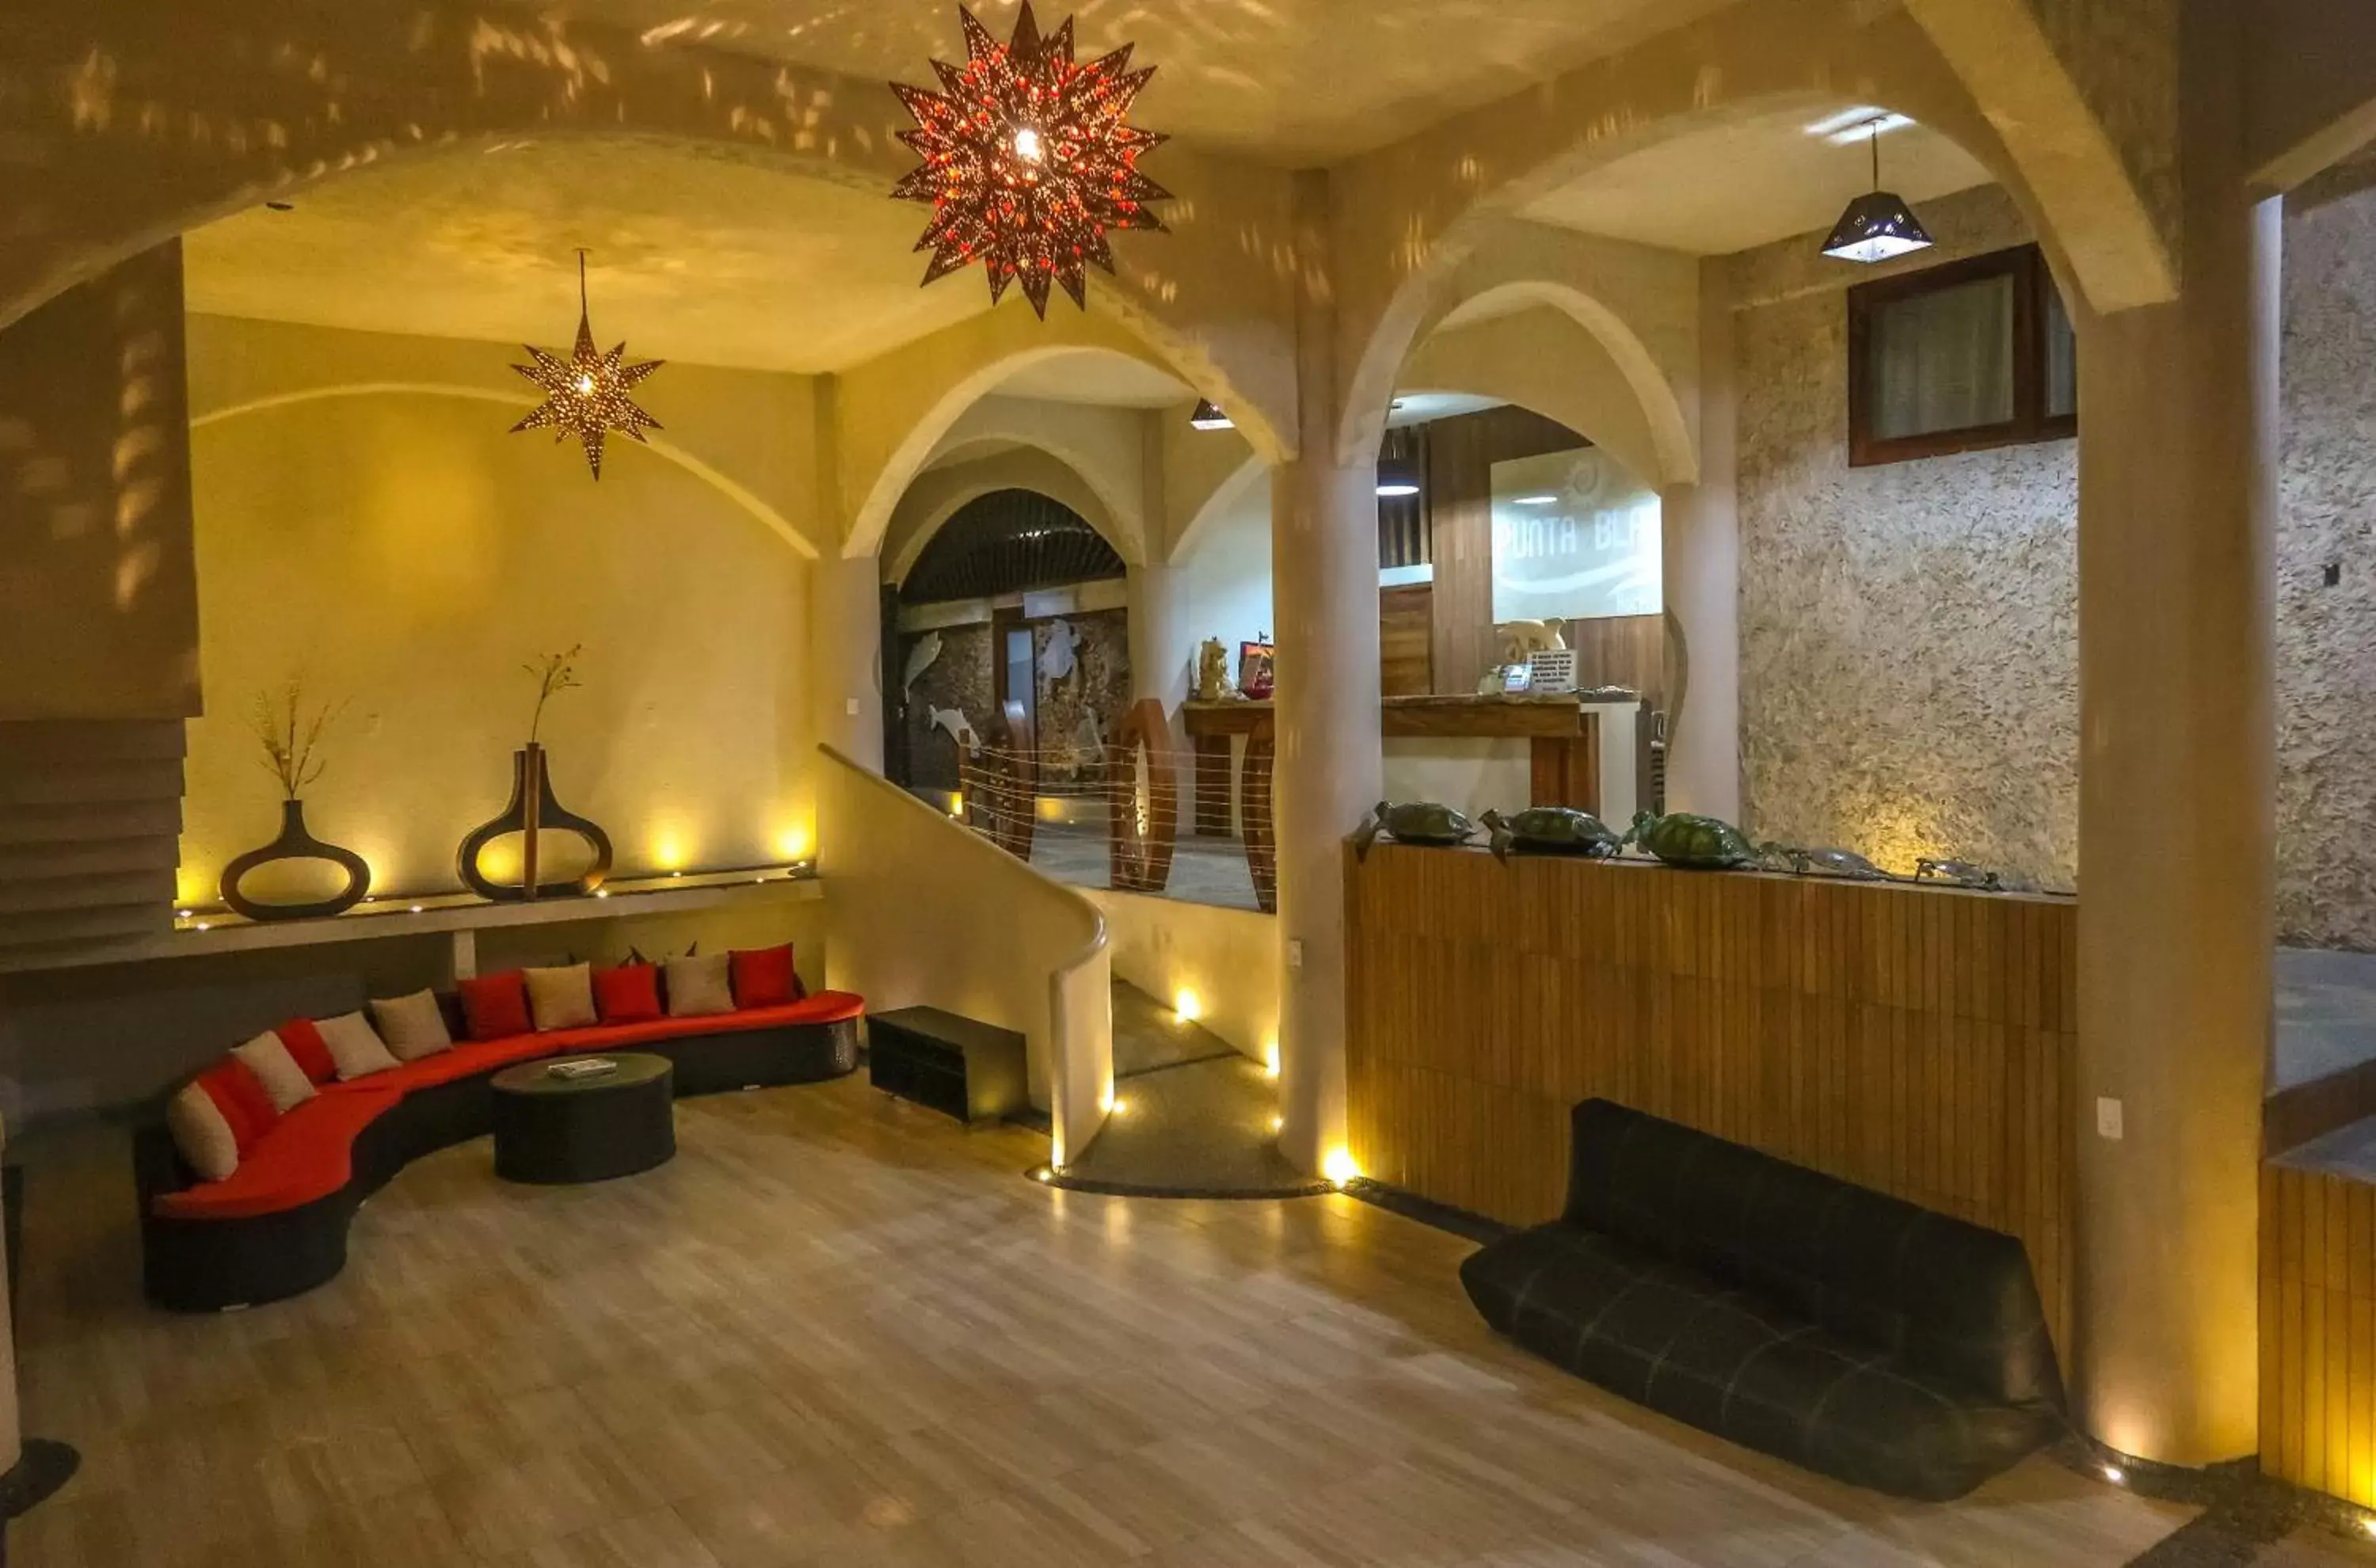 Lobby or reception in Hotel Villas Punta Blanca